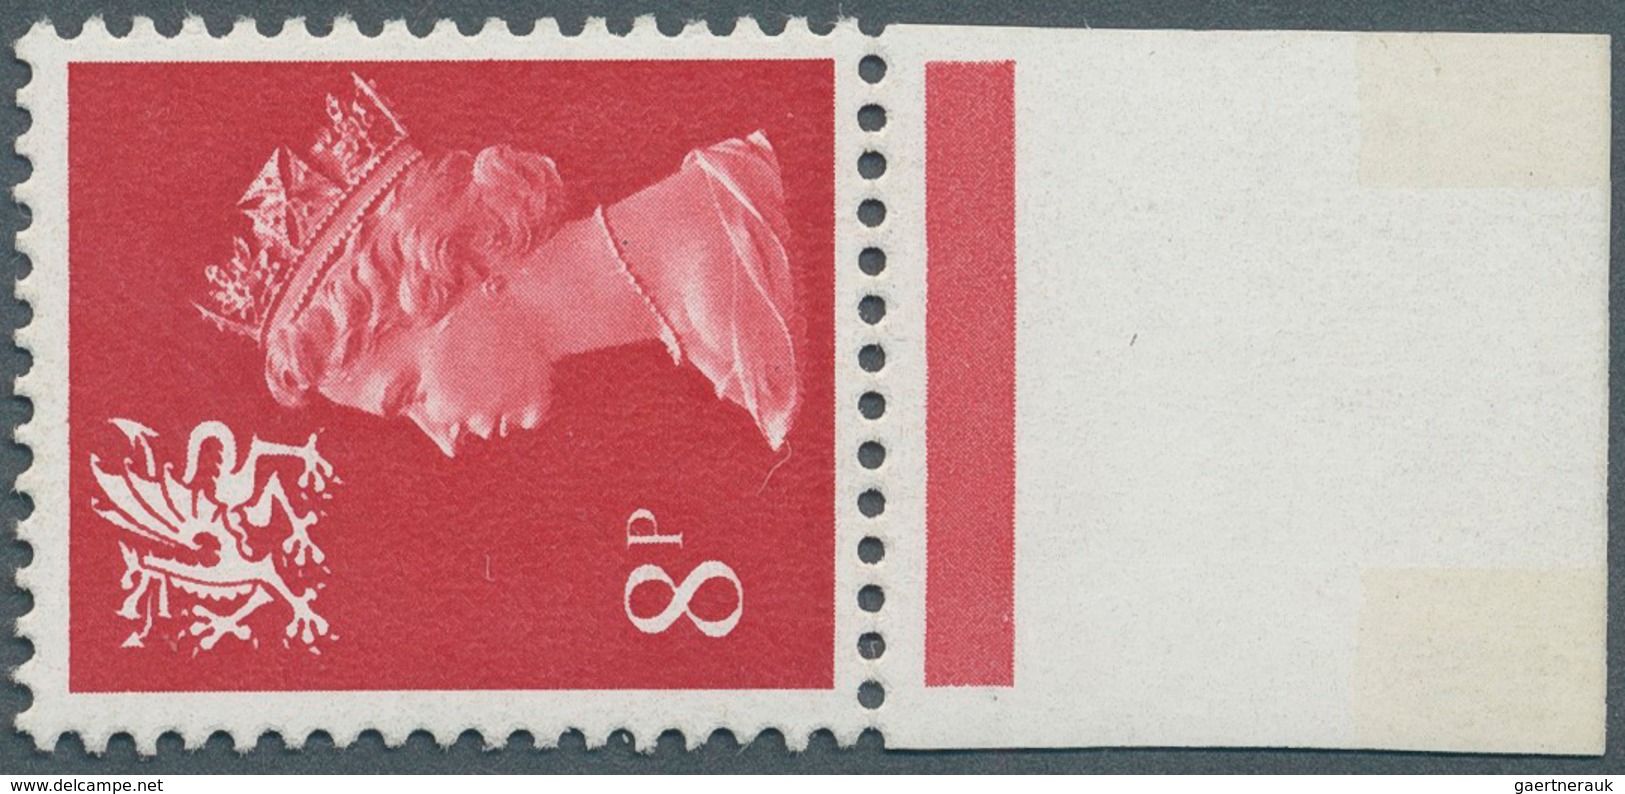 Großbritannien - Regionalmarken: Wales: 1974, 8 P. Rosine With Lower Margin, Showing Variety "phosph - Wales